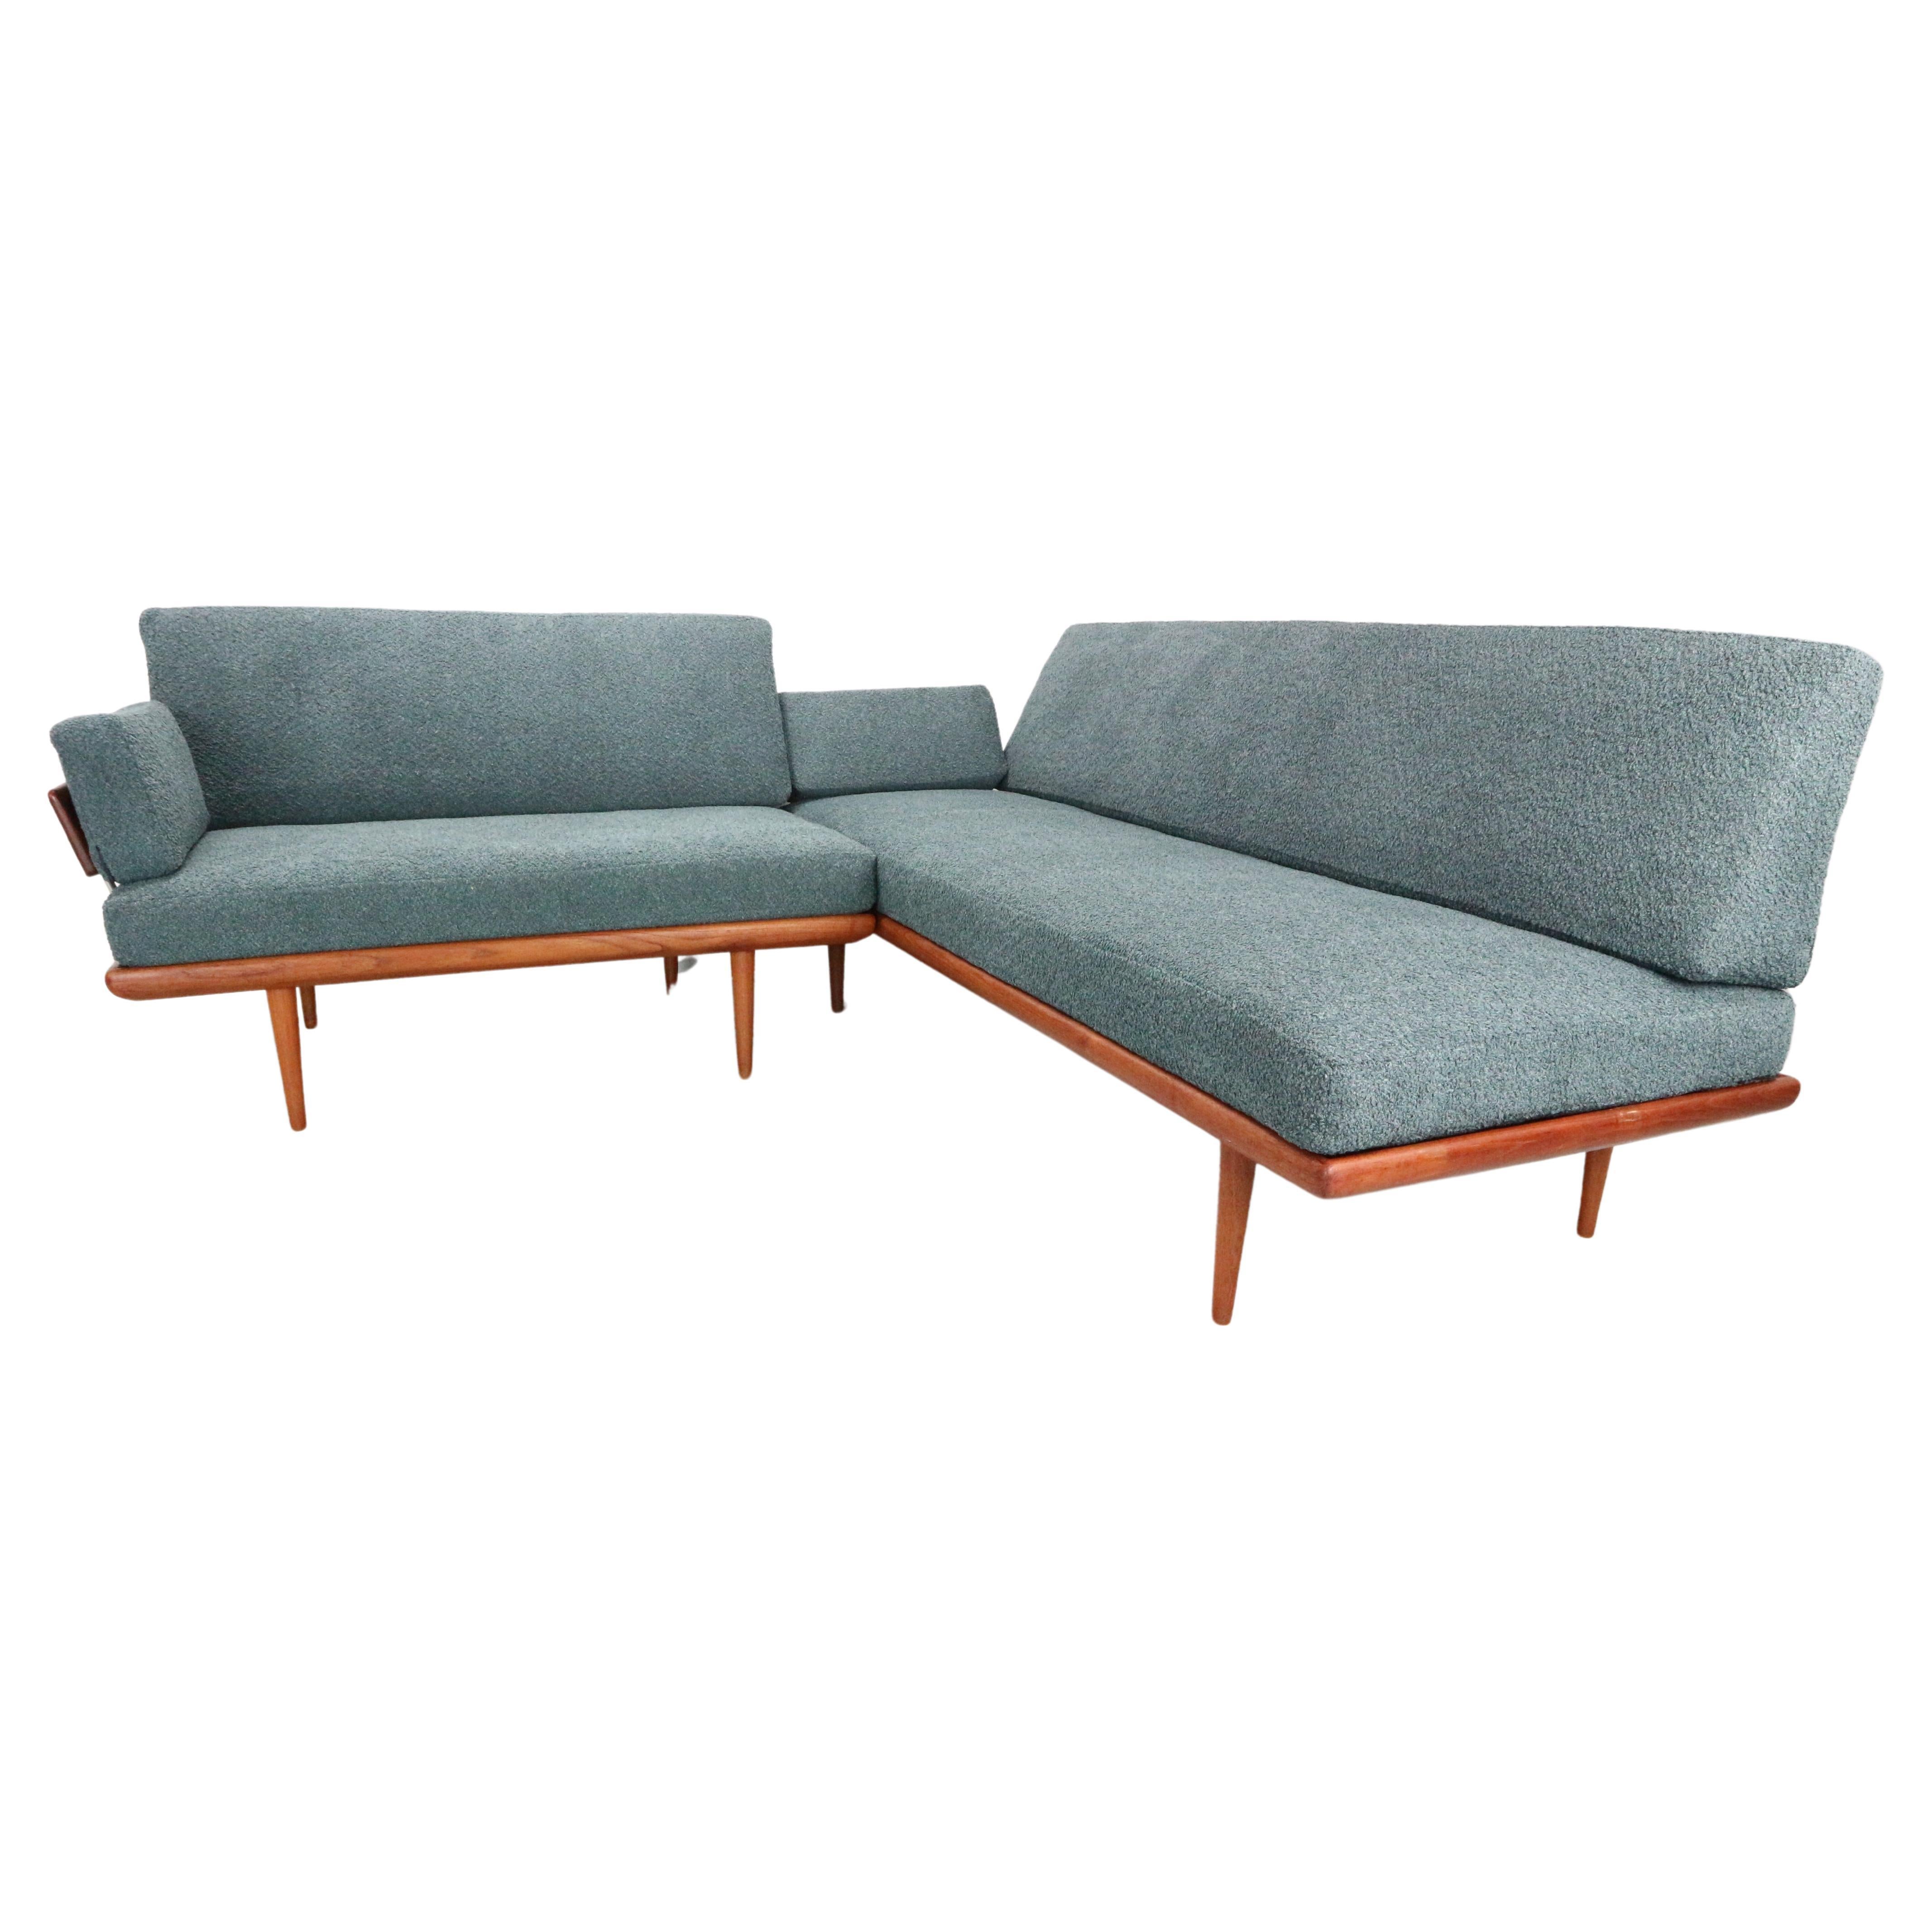 5 seat sofa "MINERVA" by Peter Hvidt and Olga Molgaard Nielsen in petrol bouclé